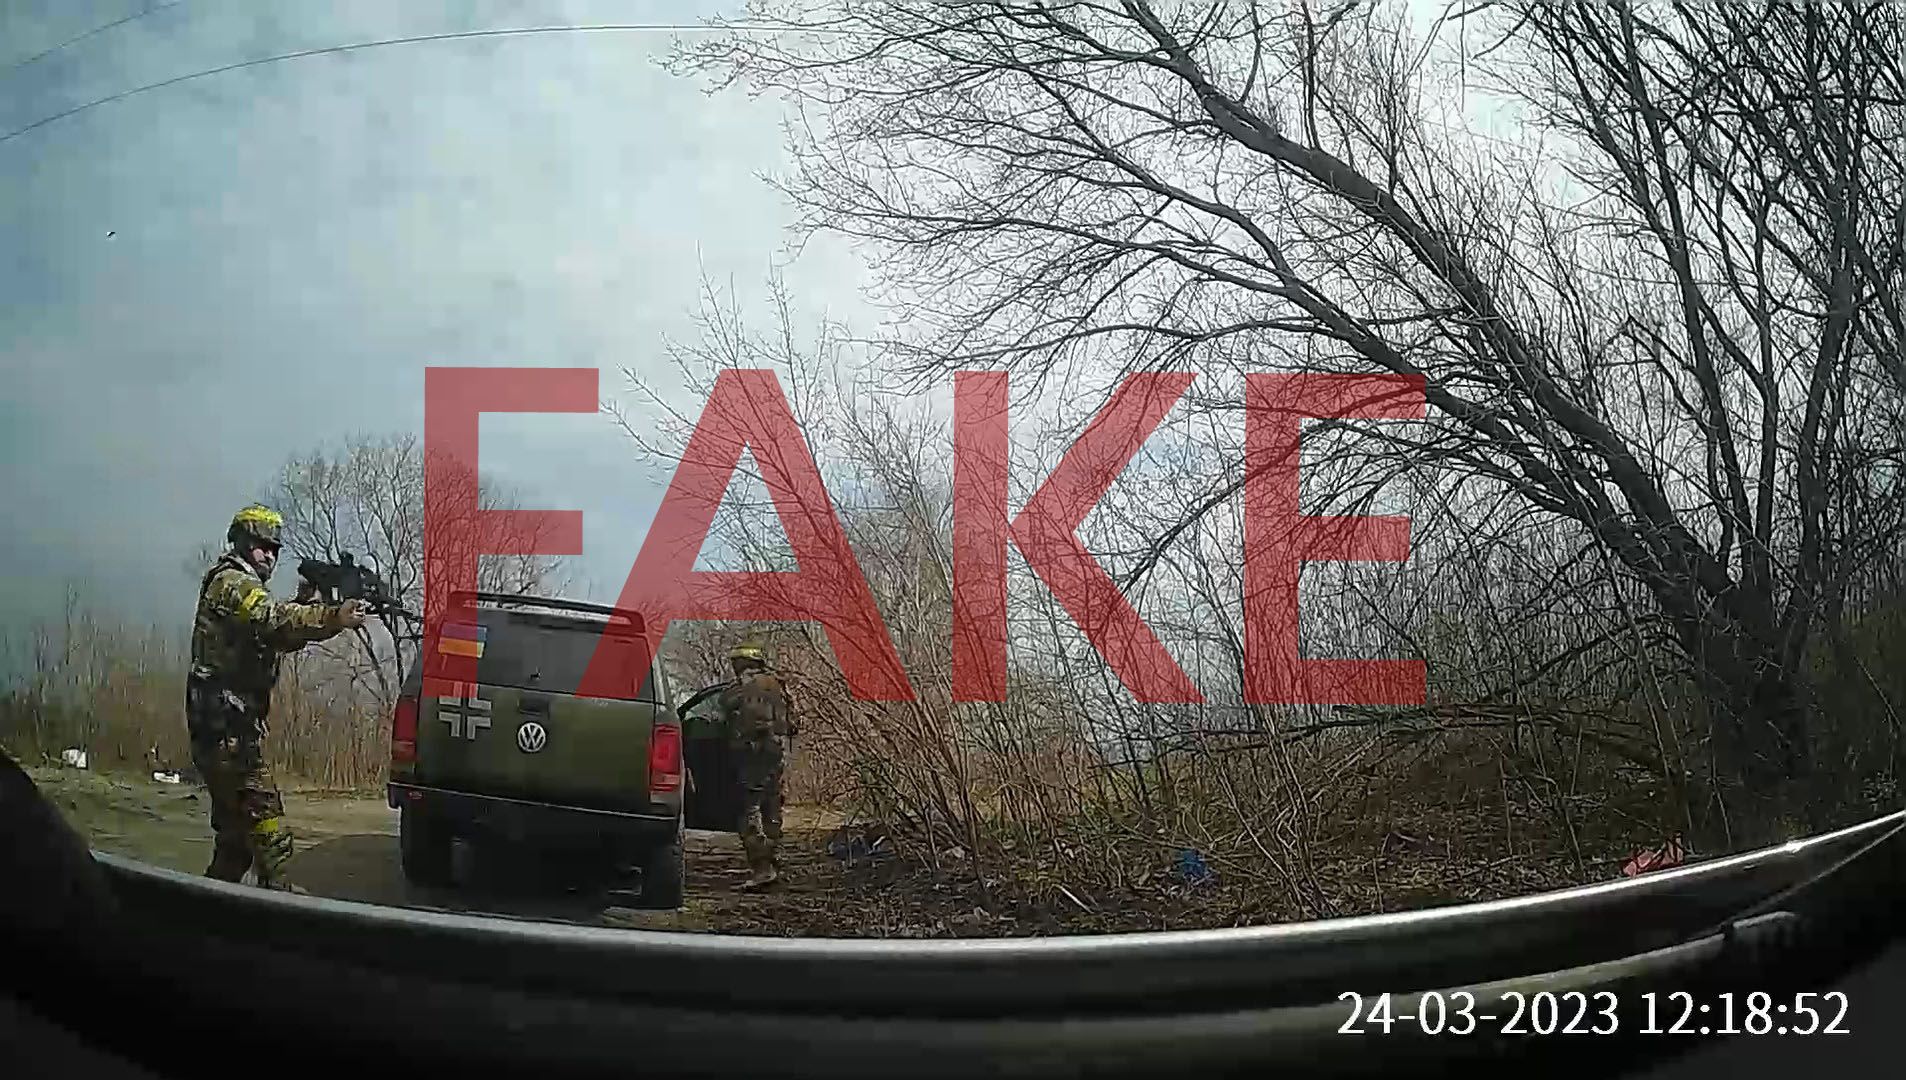 Відео, де невідомий в українській формі нібито стріляє по цивільному авто жінки з дитиною, є примітивним рашистським фейком